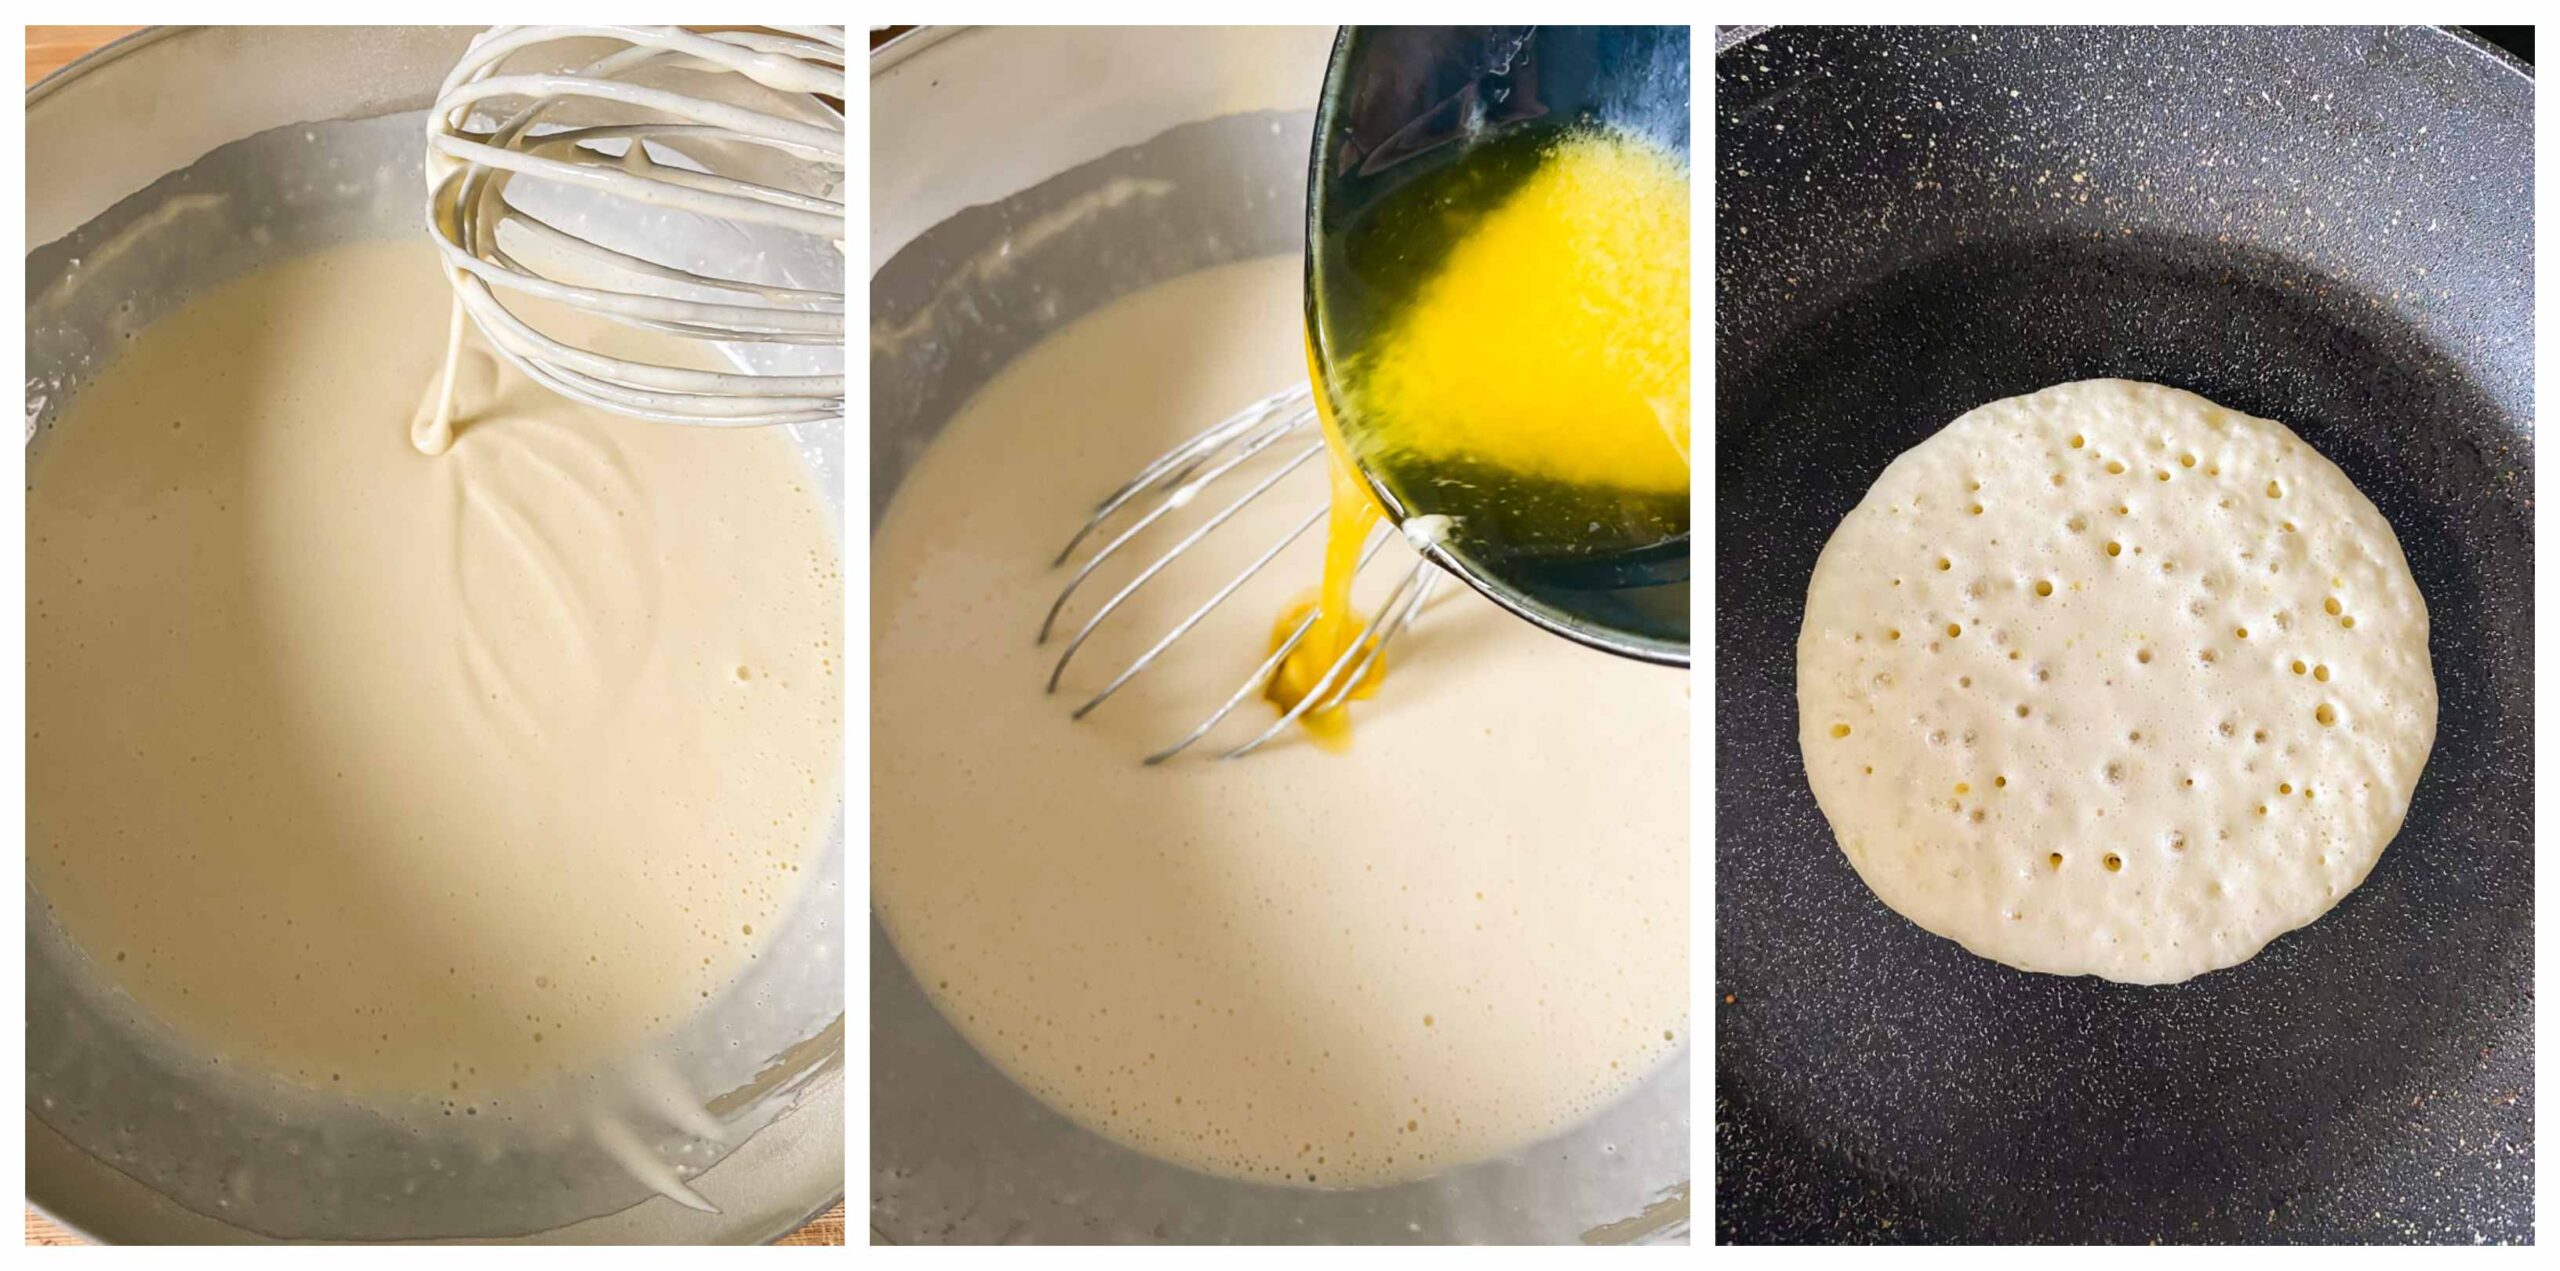 pancake recipe process images